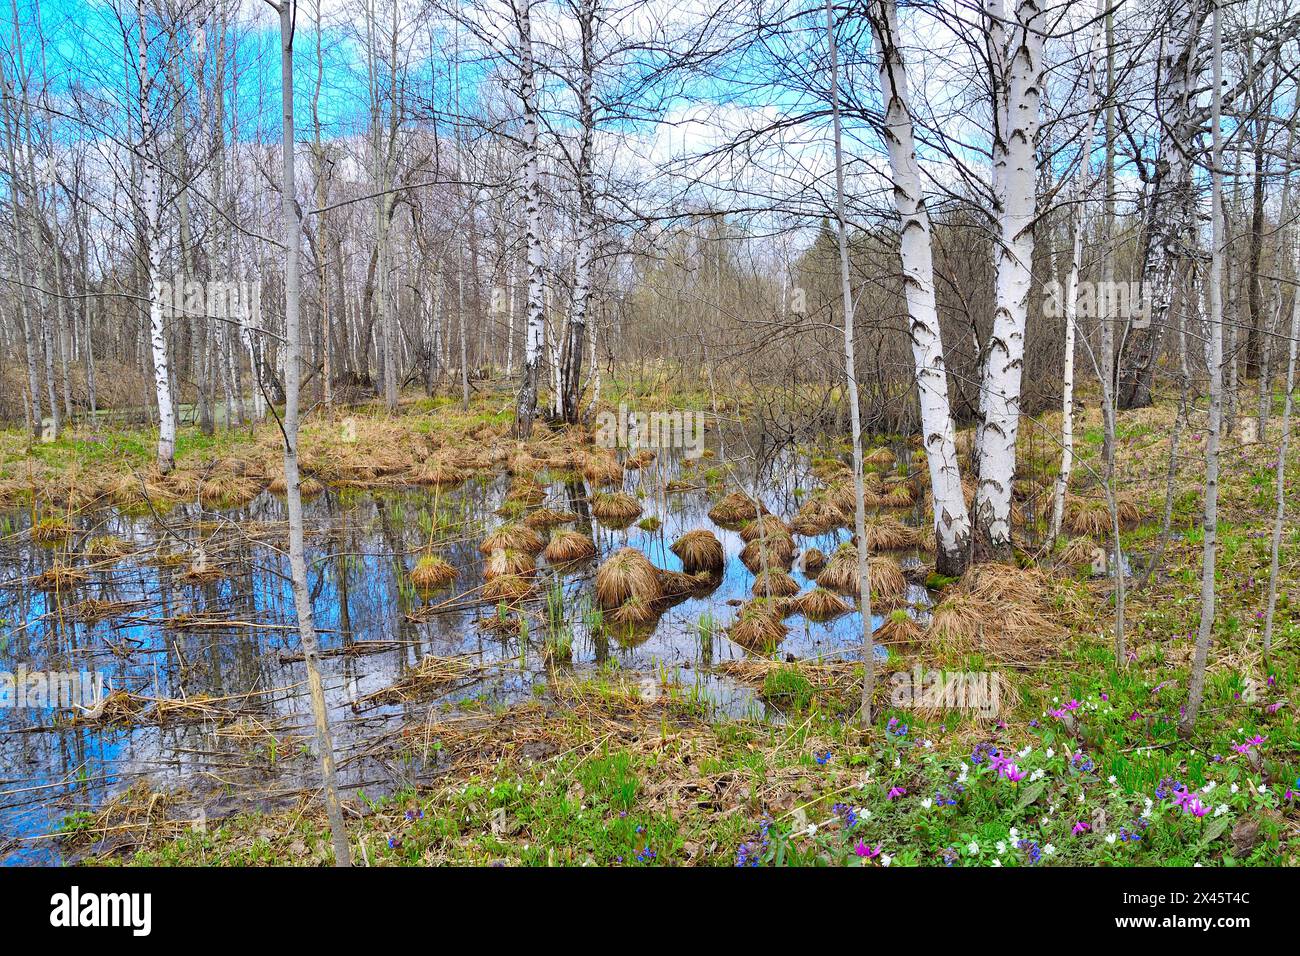 Paysage pittoresque du début du printemps dans une plantation de bouleaux avec les premières fleurs sauvages blanches, bleues et violettes sur la clairière de la forêt, des arbres sans feuilles et le ciel bleu reflété Banque D'Images